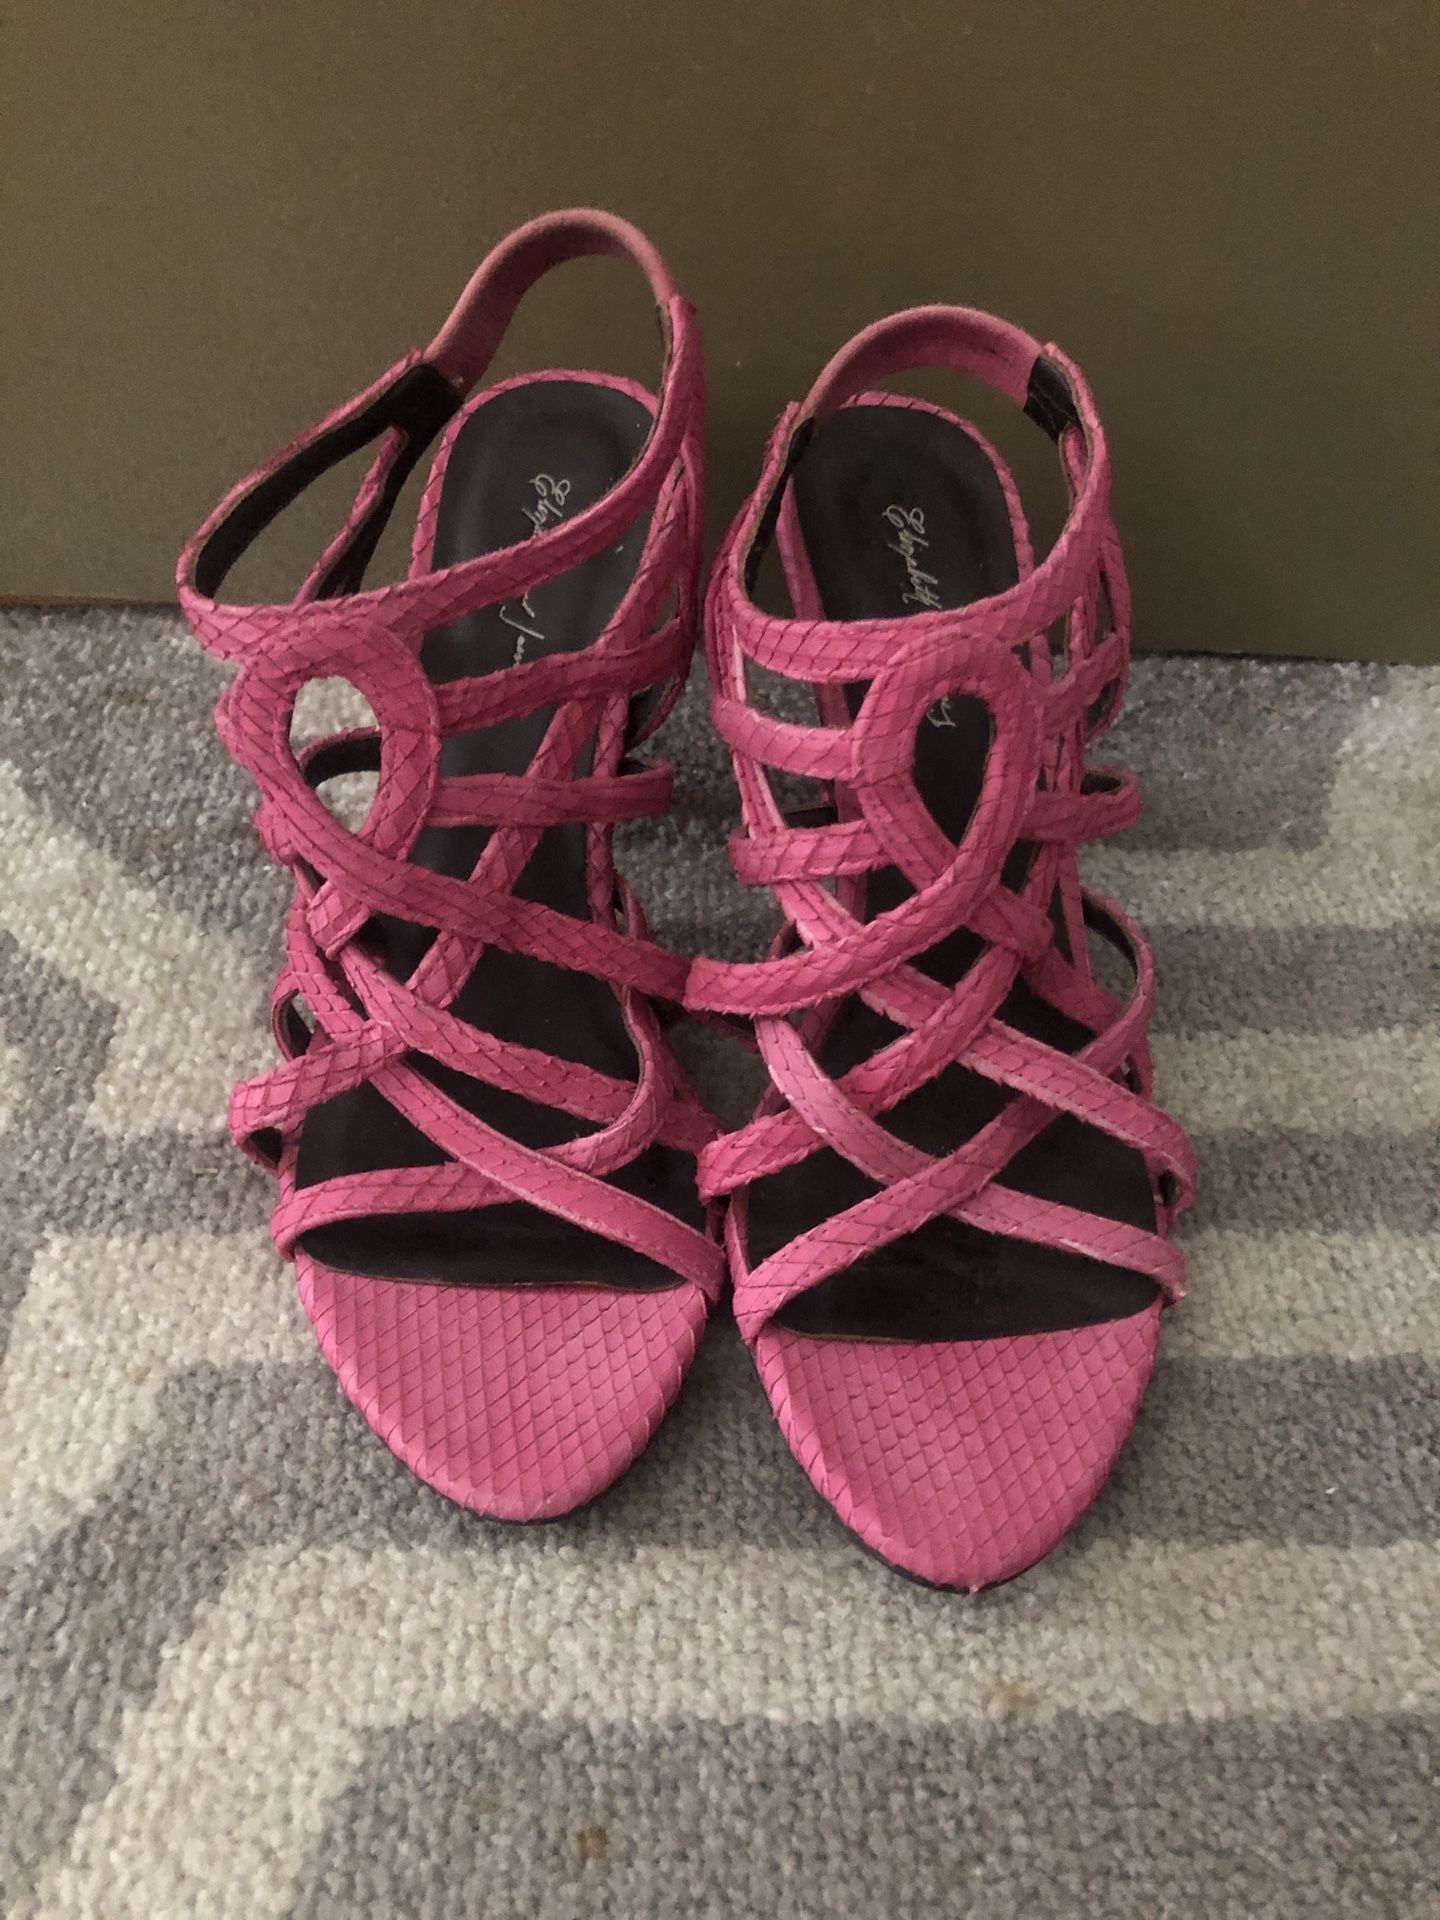 Elizabeth And Jenny Pink Sling Back 4” Heels Size 7.5